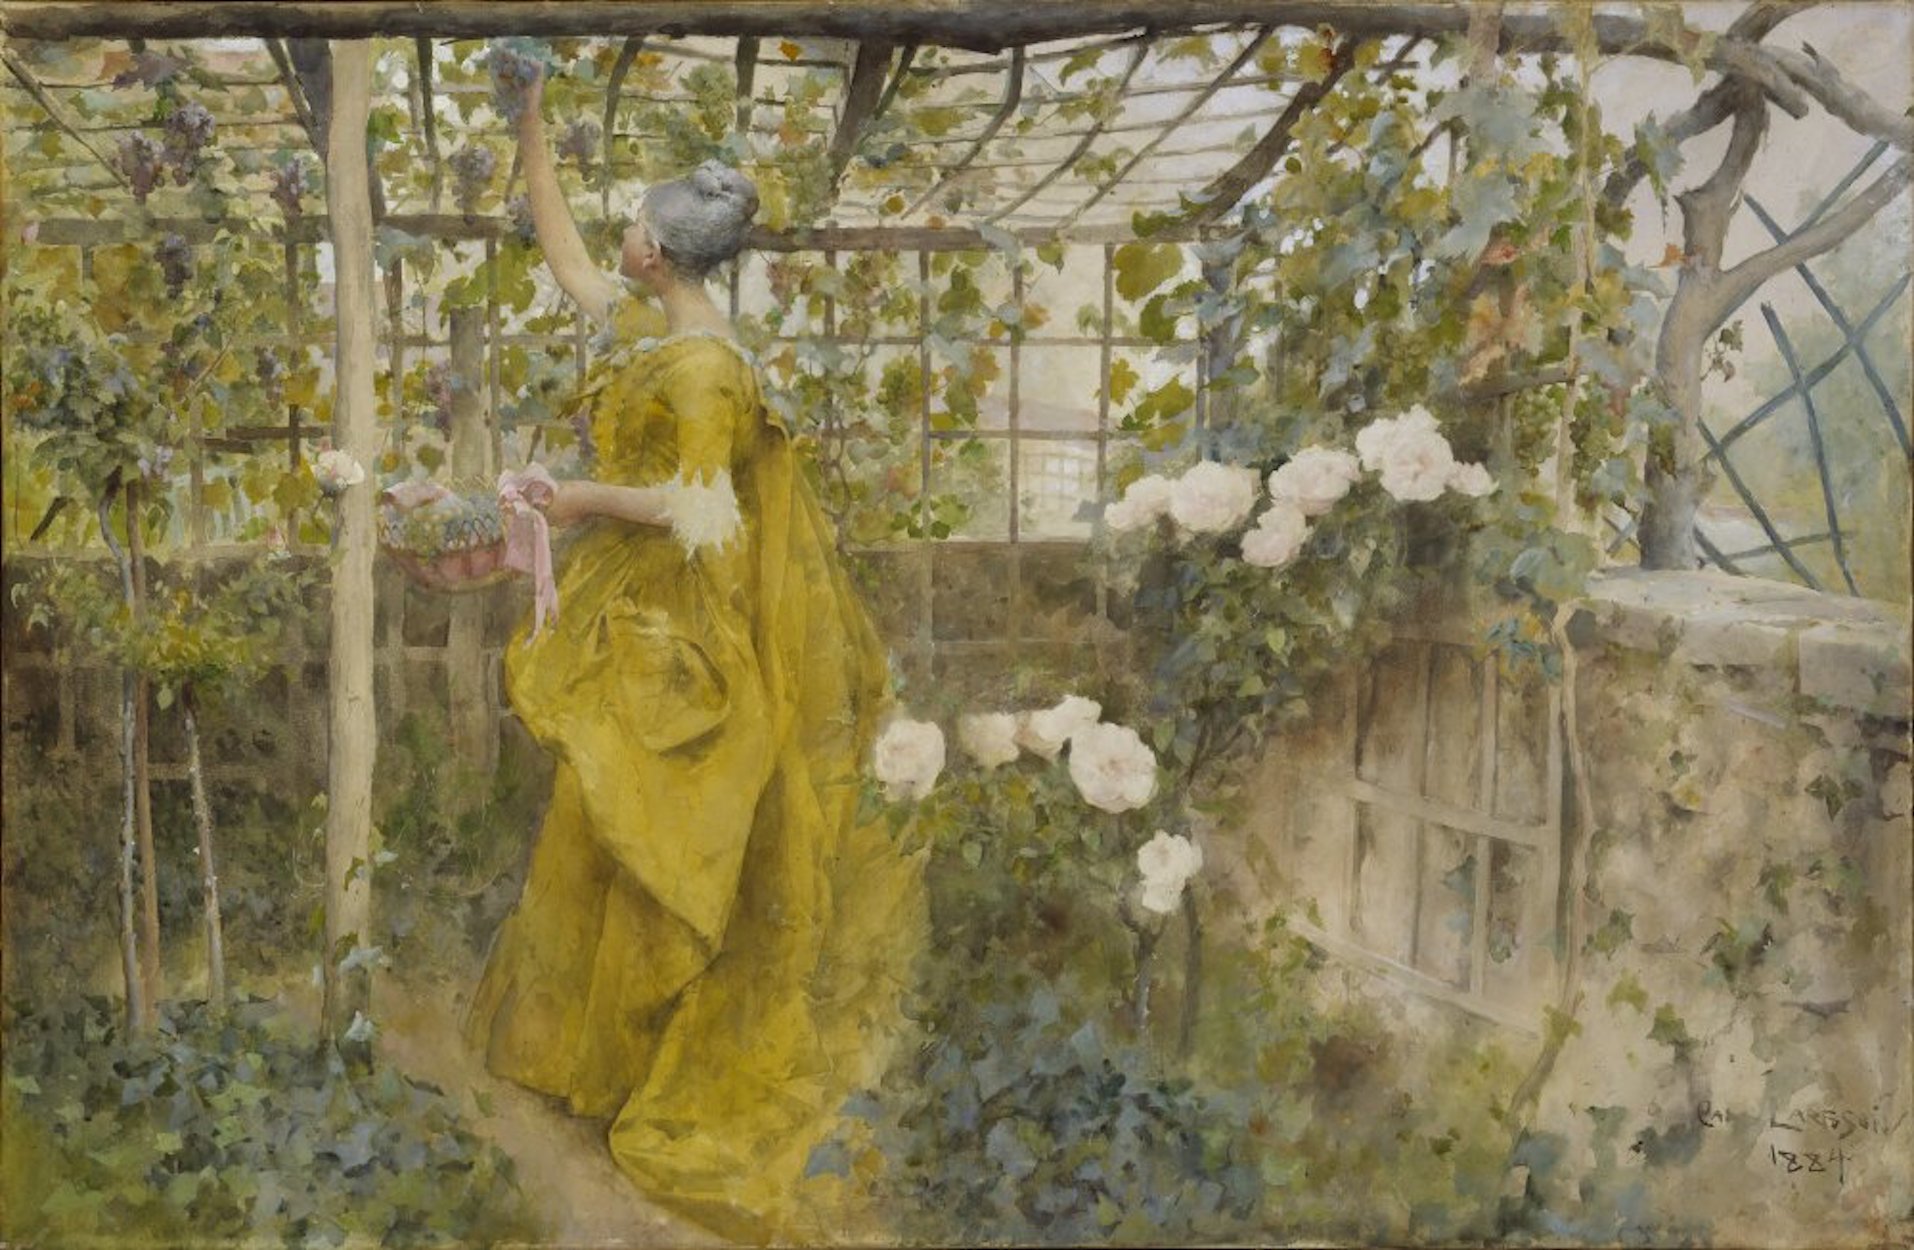 La vigne by Carl Larsson - 1884 - 60 x 92 cm 